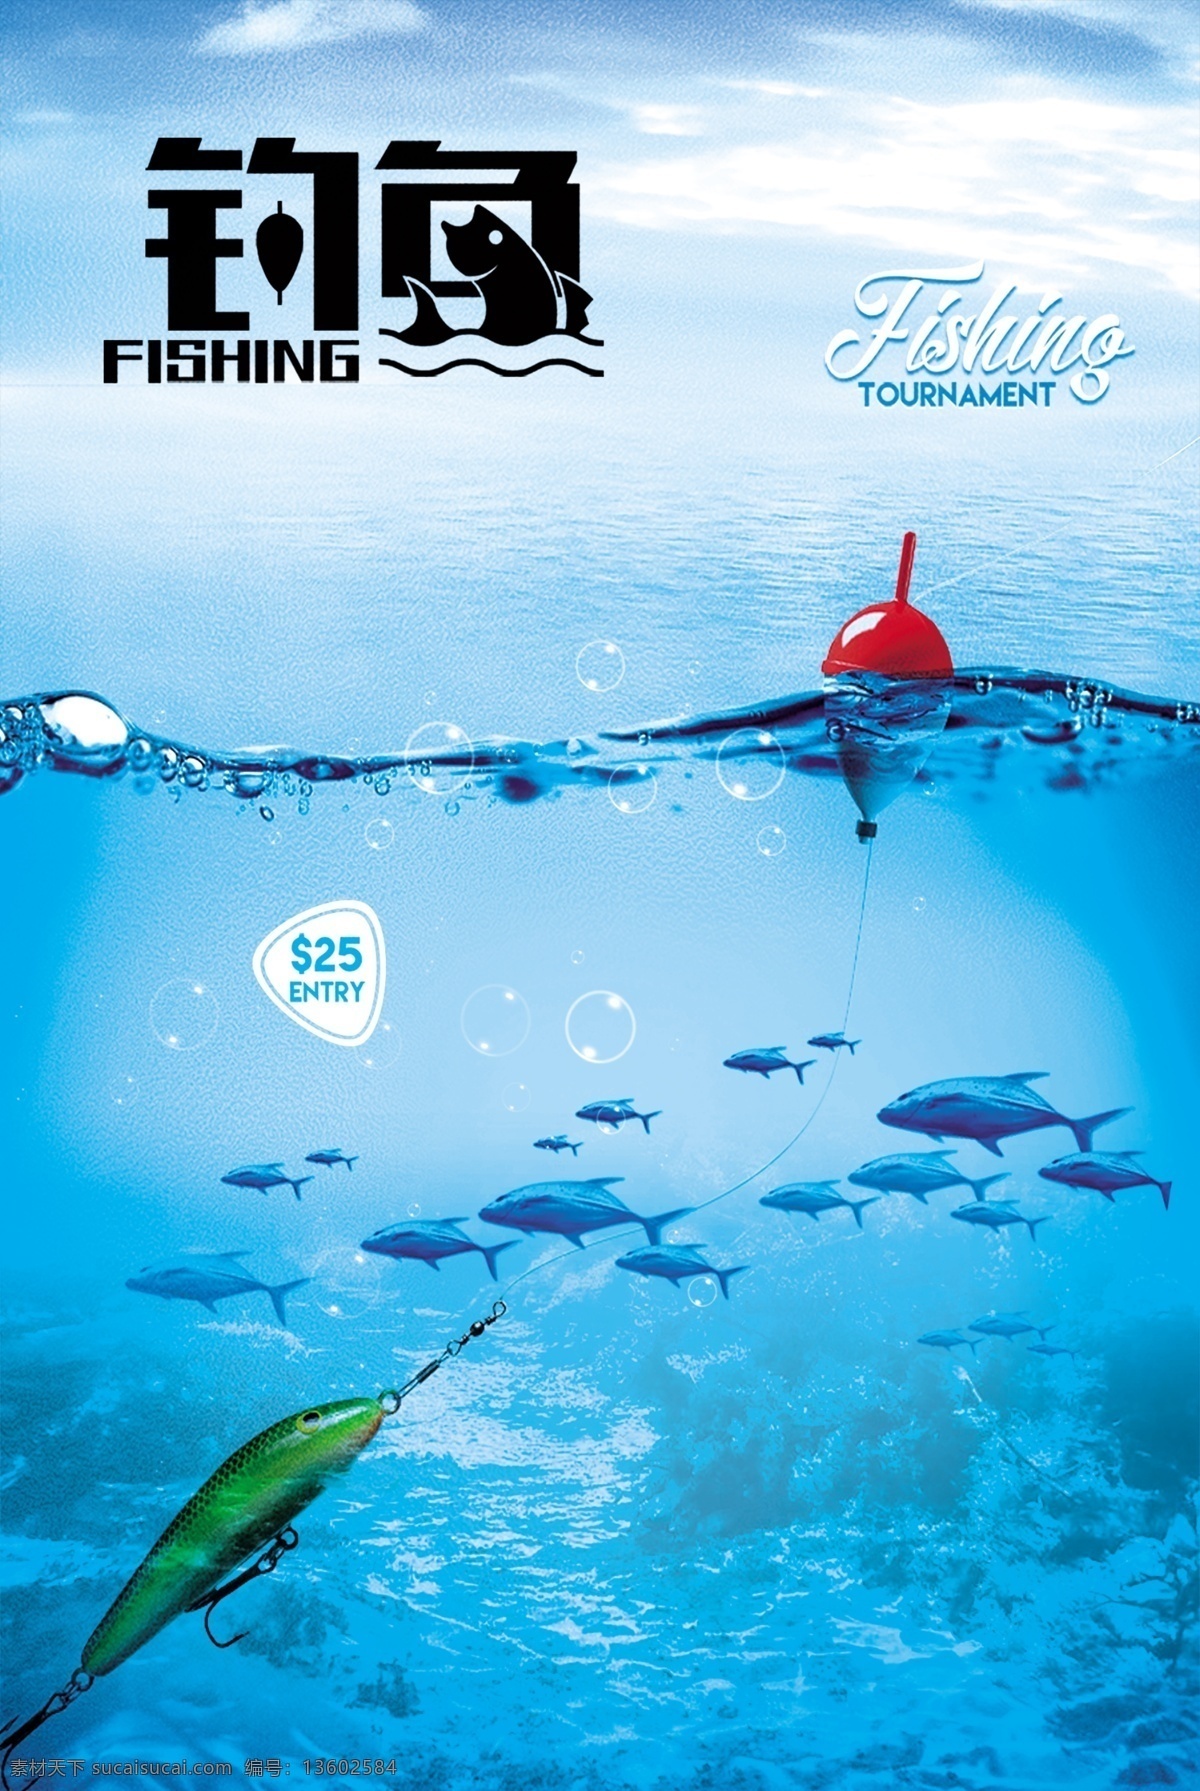 钓鱼 夏季 鱼塘 宣传 活动 海报